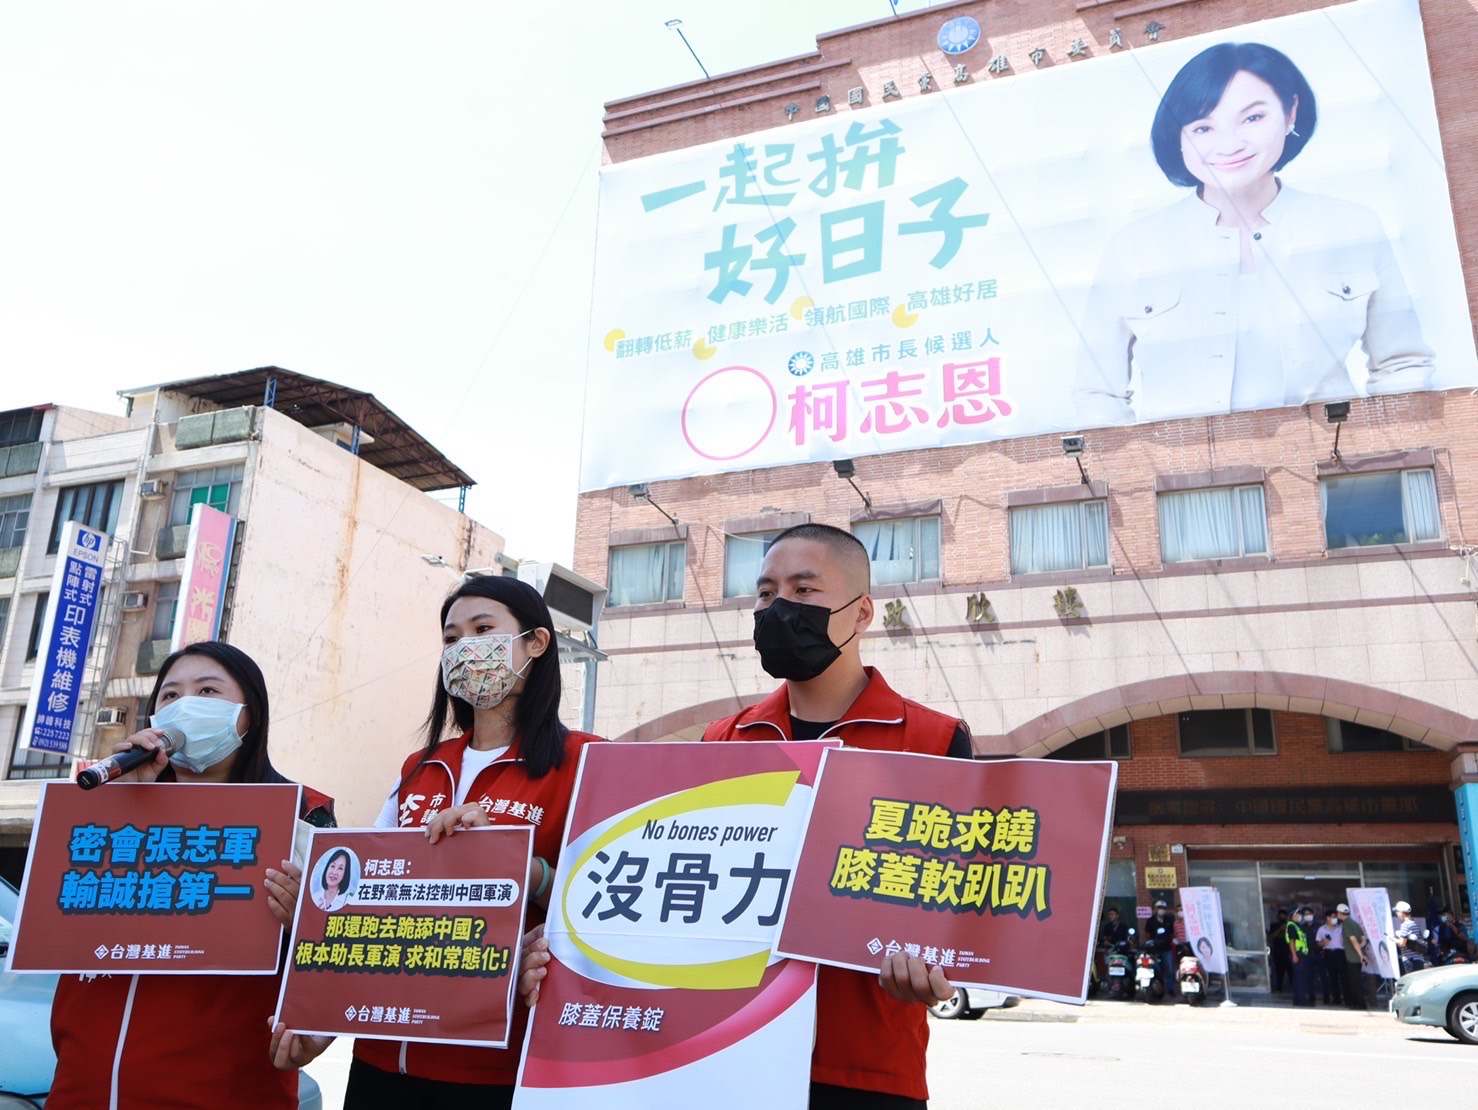 抨擊國共會  基進黨三位參選人到國民黨高雄市黨部送護膝、保健食品